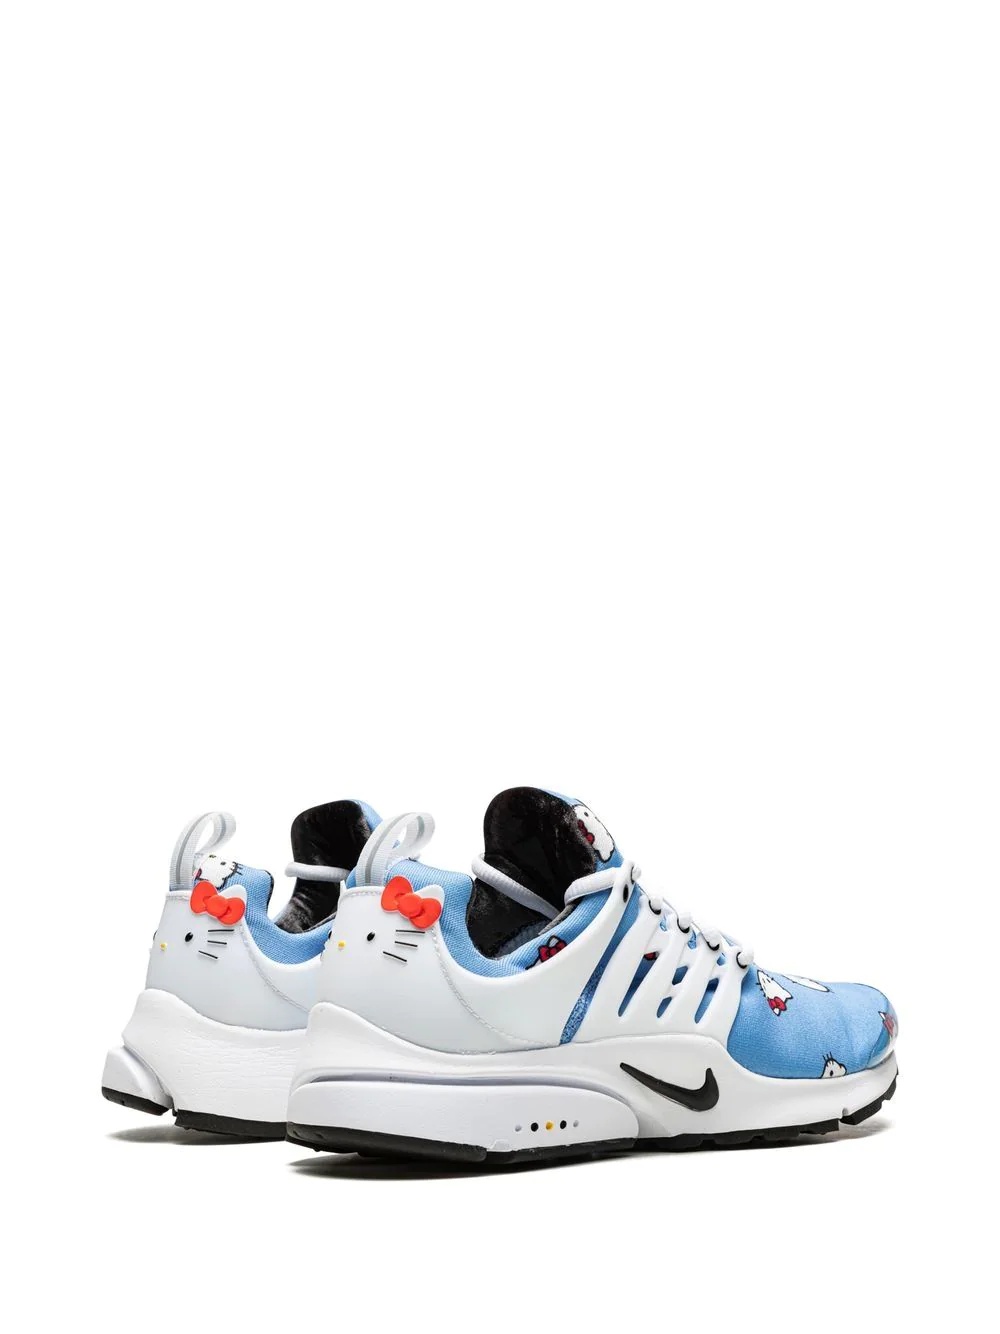 Air Presto "Hello Kitty" sneakers - 3